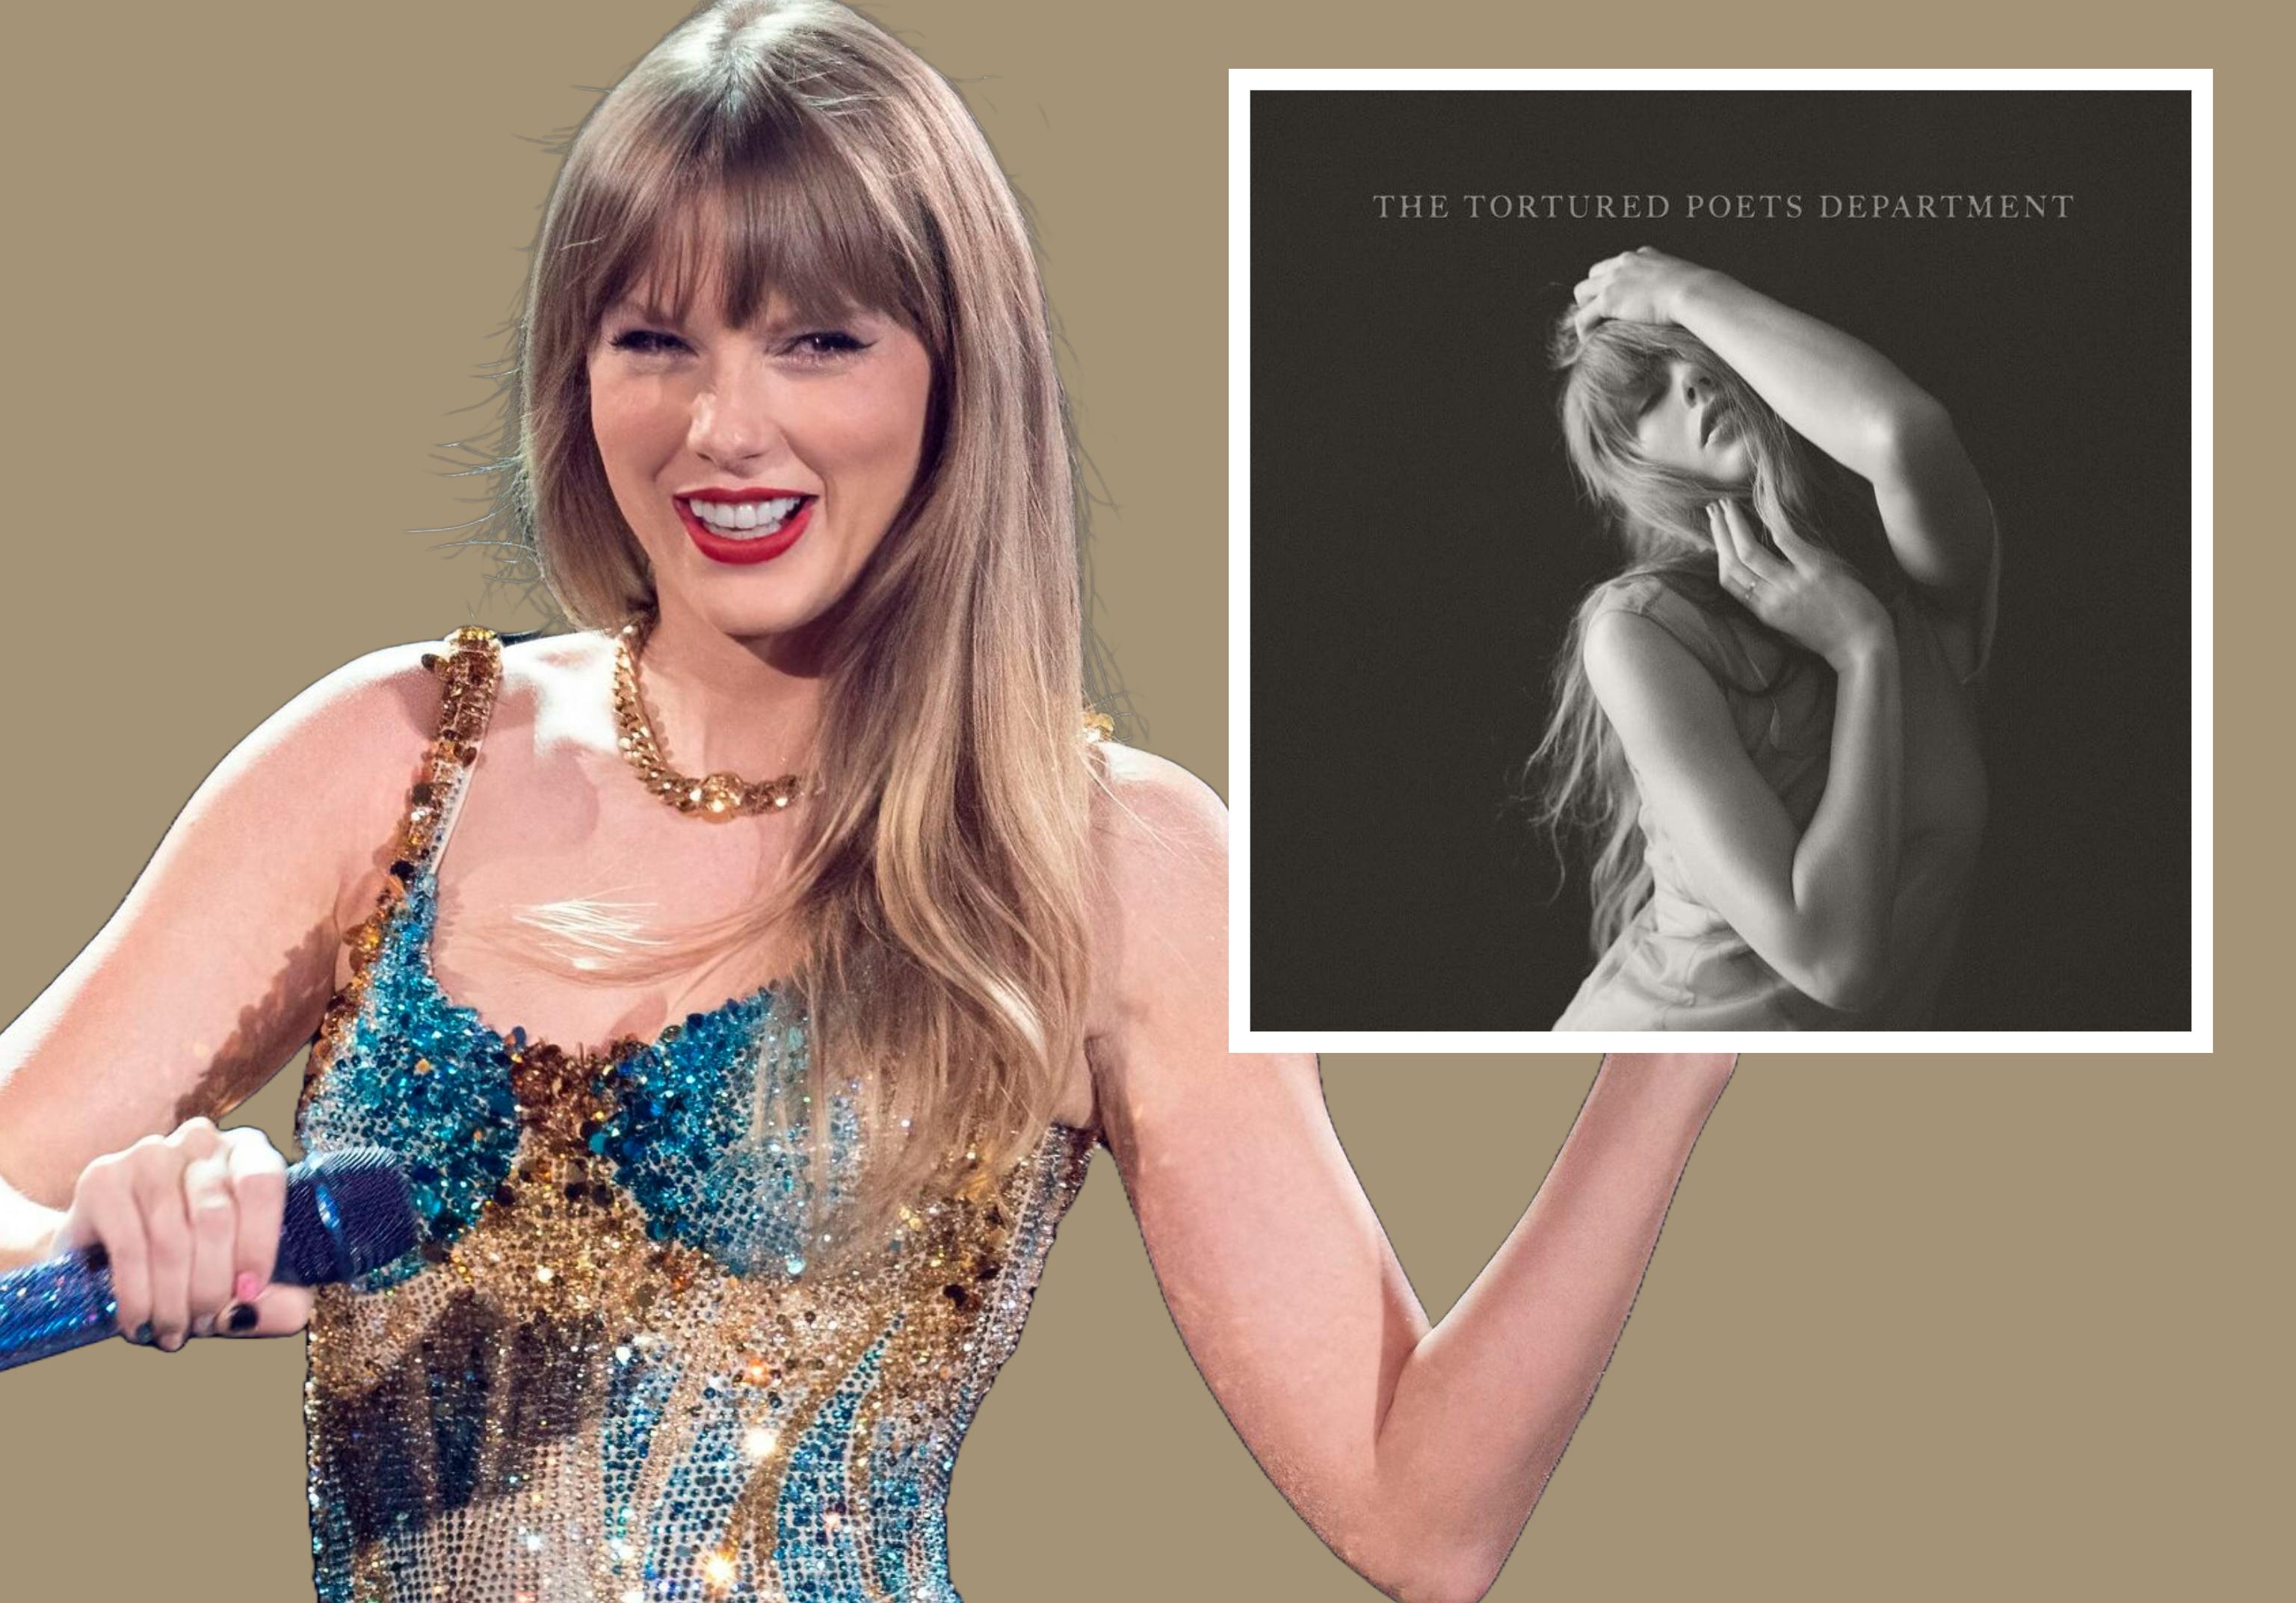 Anmelderne er vilde med Taylor Swifts nye album "The Tortured Poets Department".